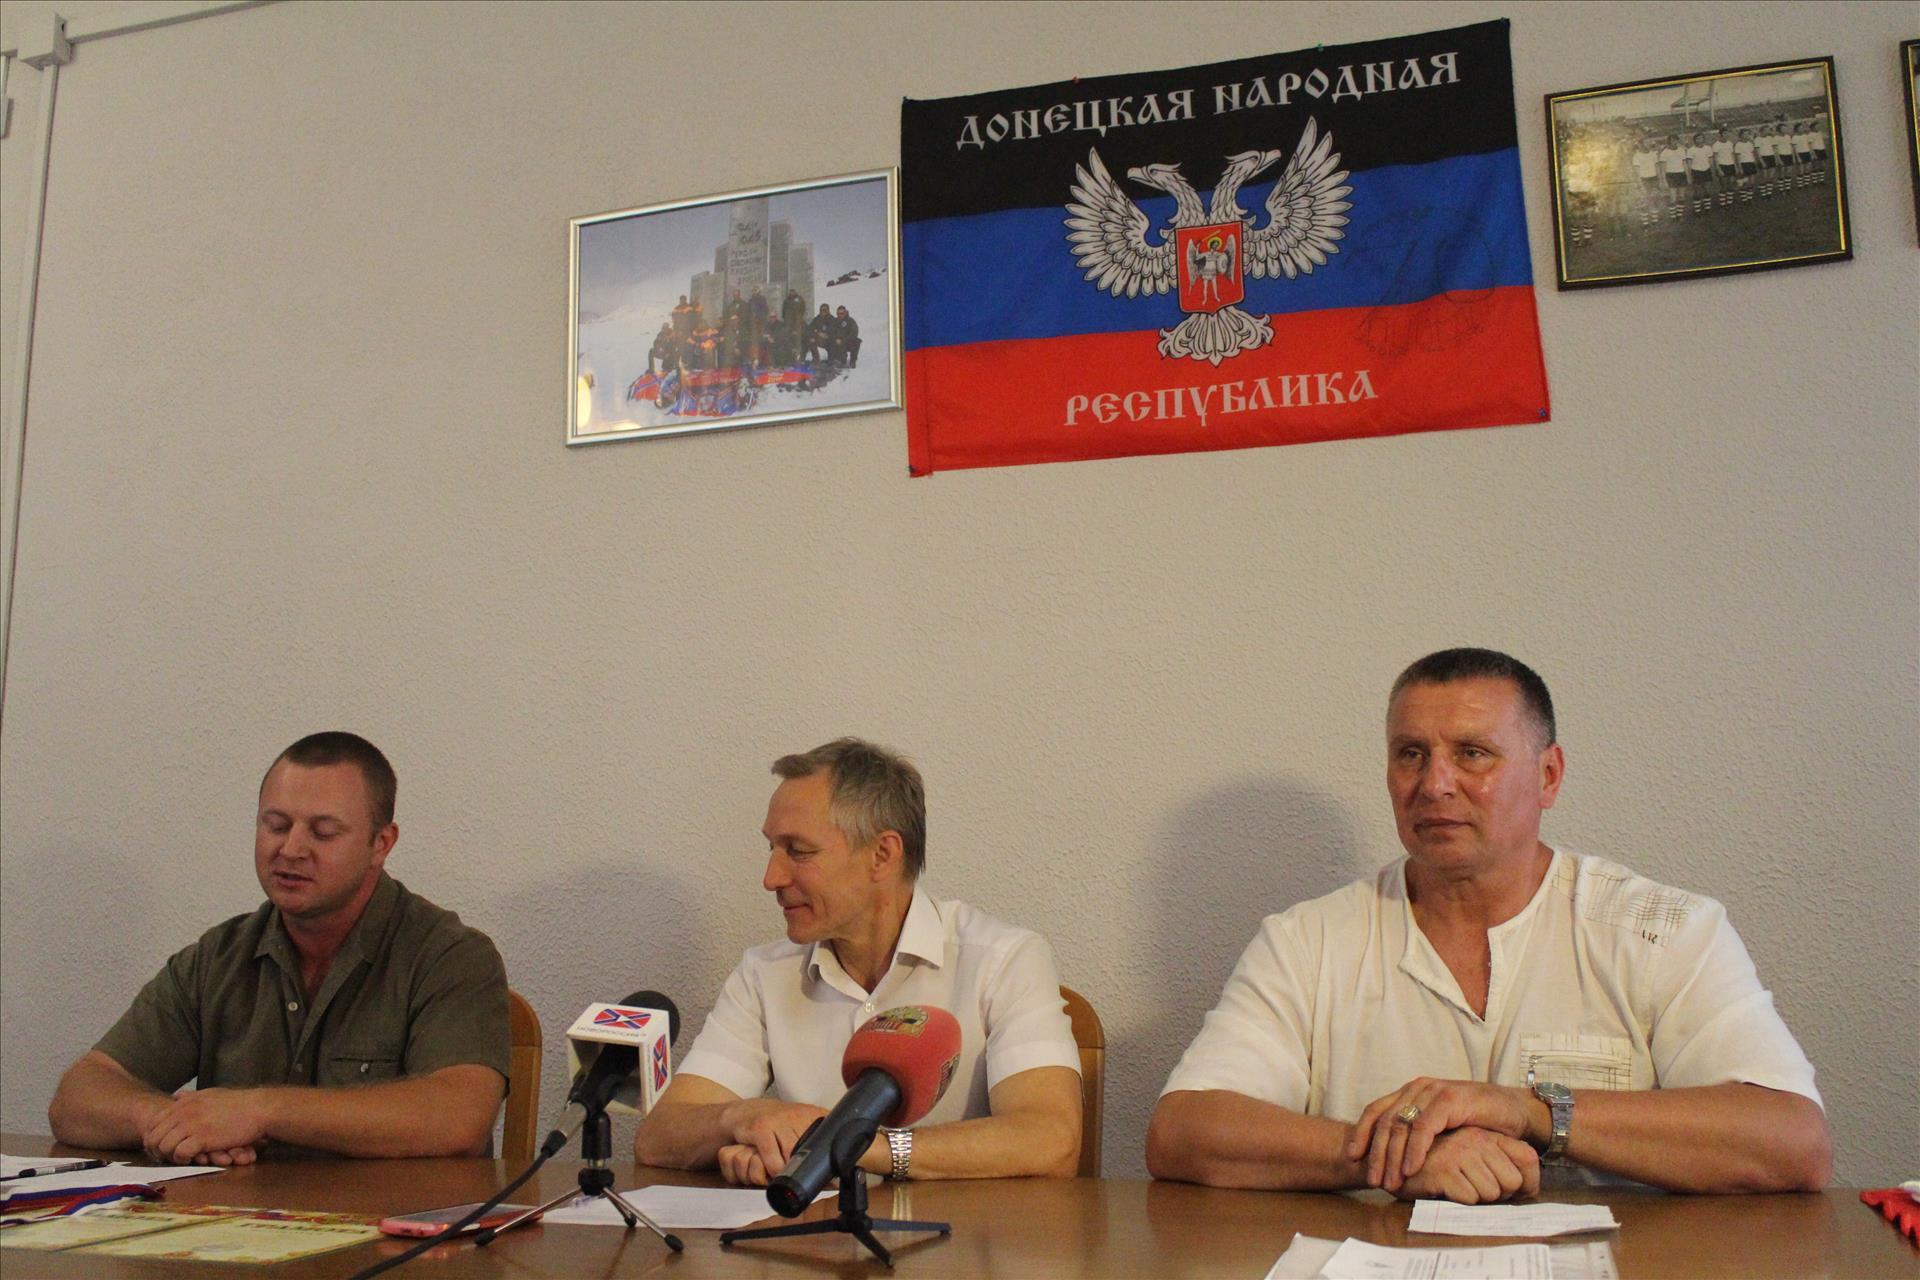 В Донецке состоялась пресс-конференция по итогу выступления команды ДНР по пауэрлифтингу в Ялте